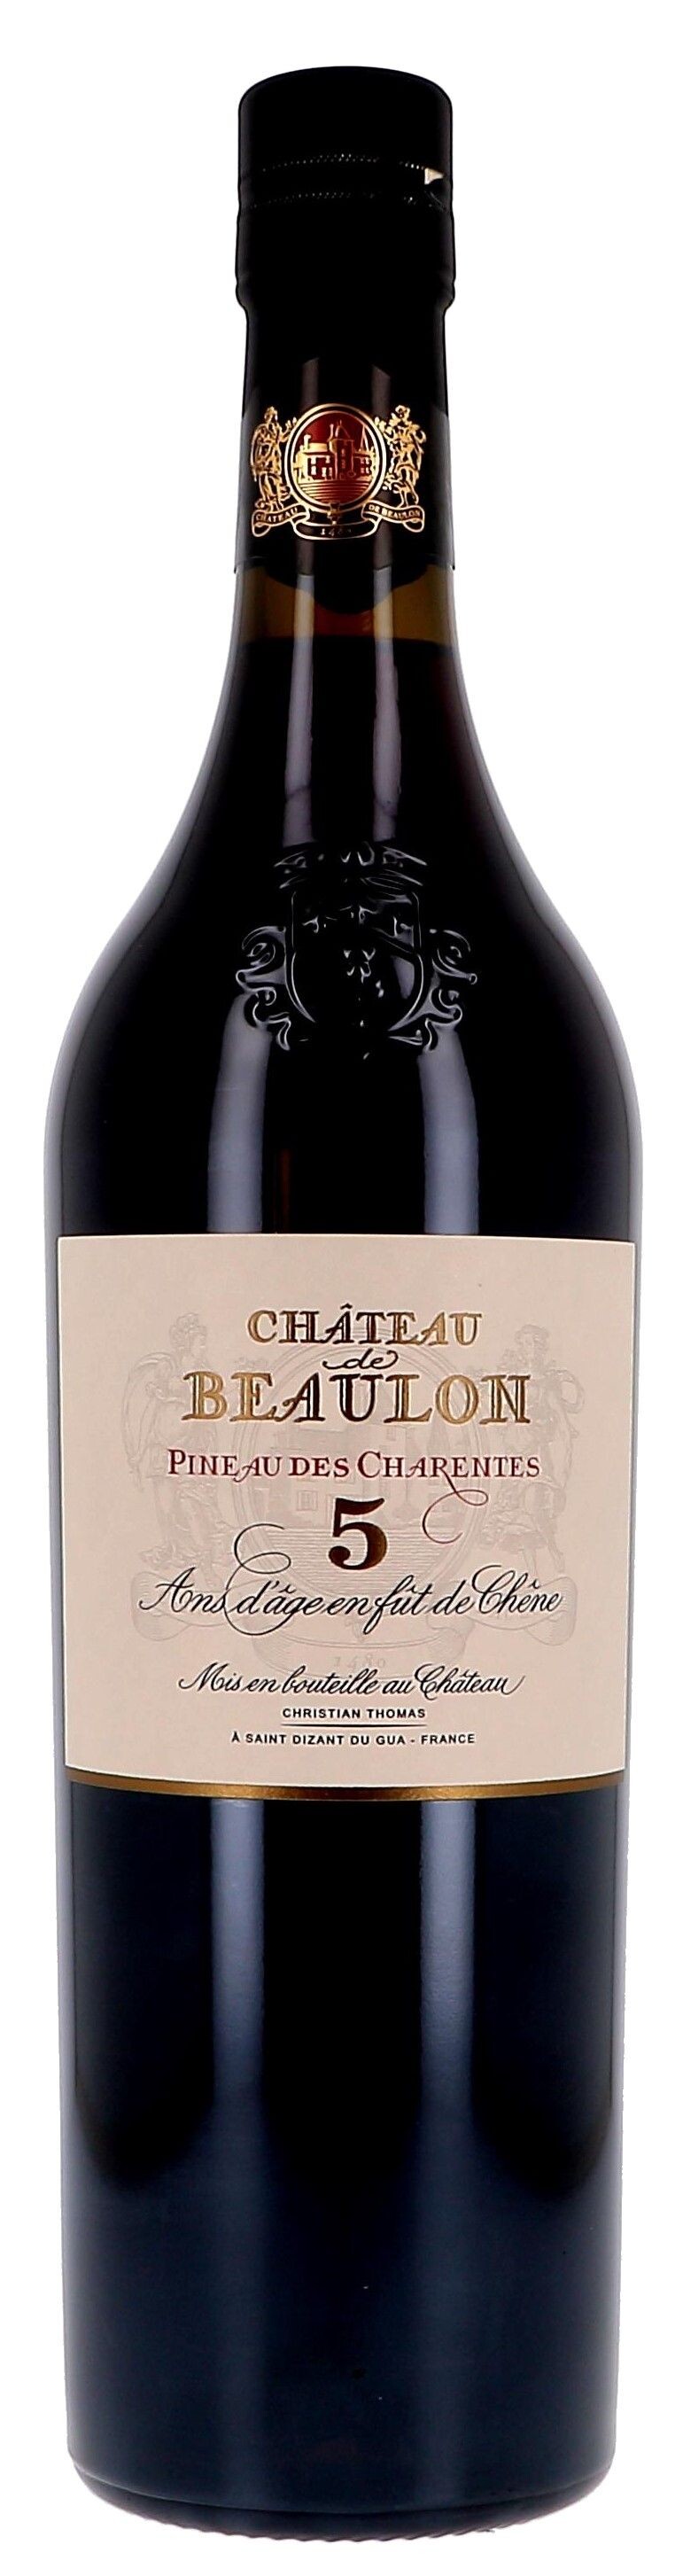 Pineau des Charentes Chateau de Beaulon red 5 Years Old 75cl (Pineau de charentes)